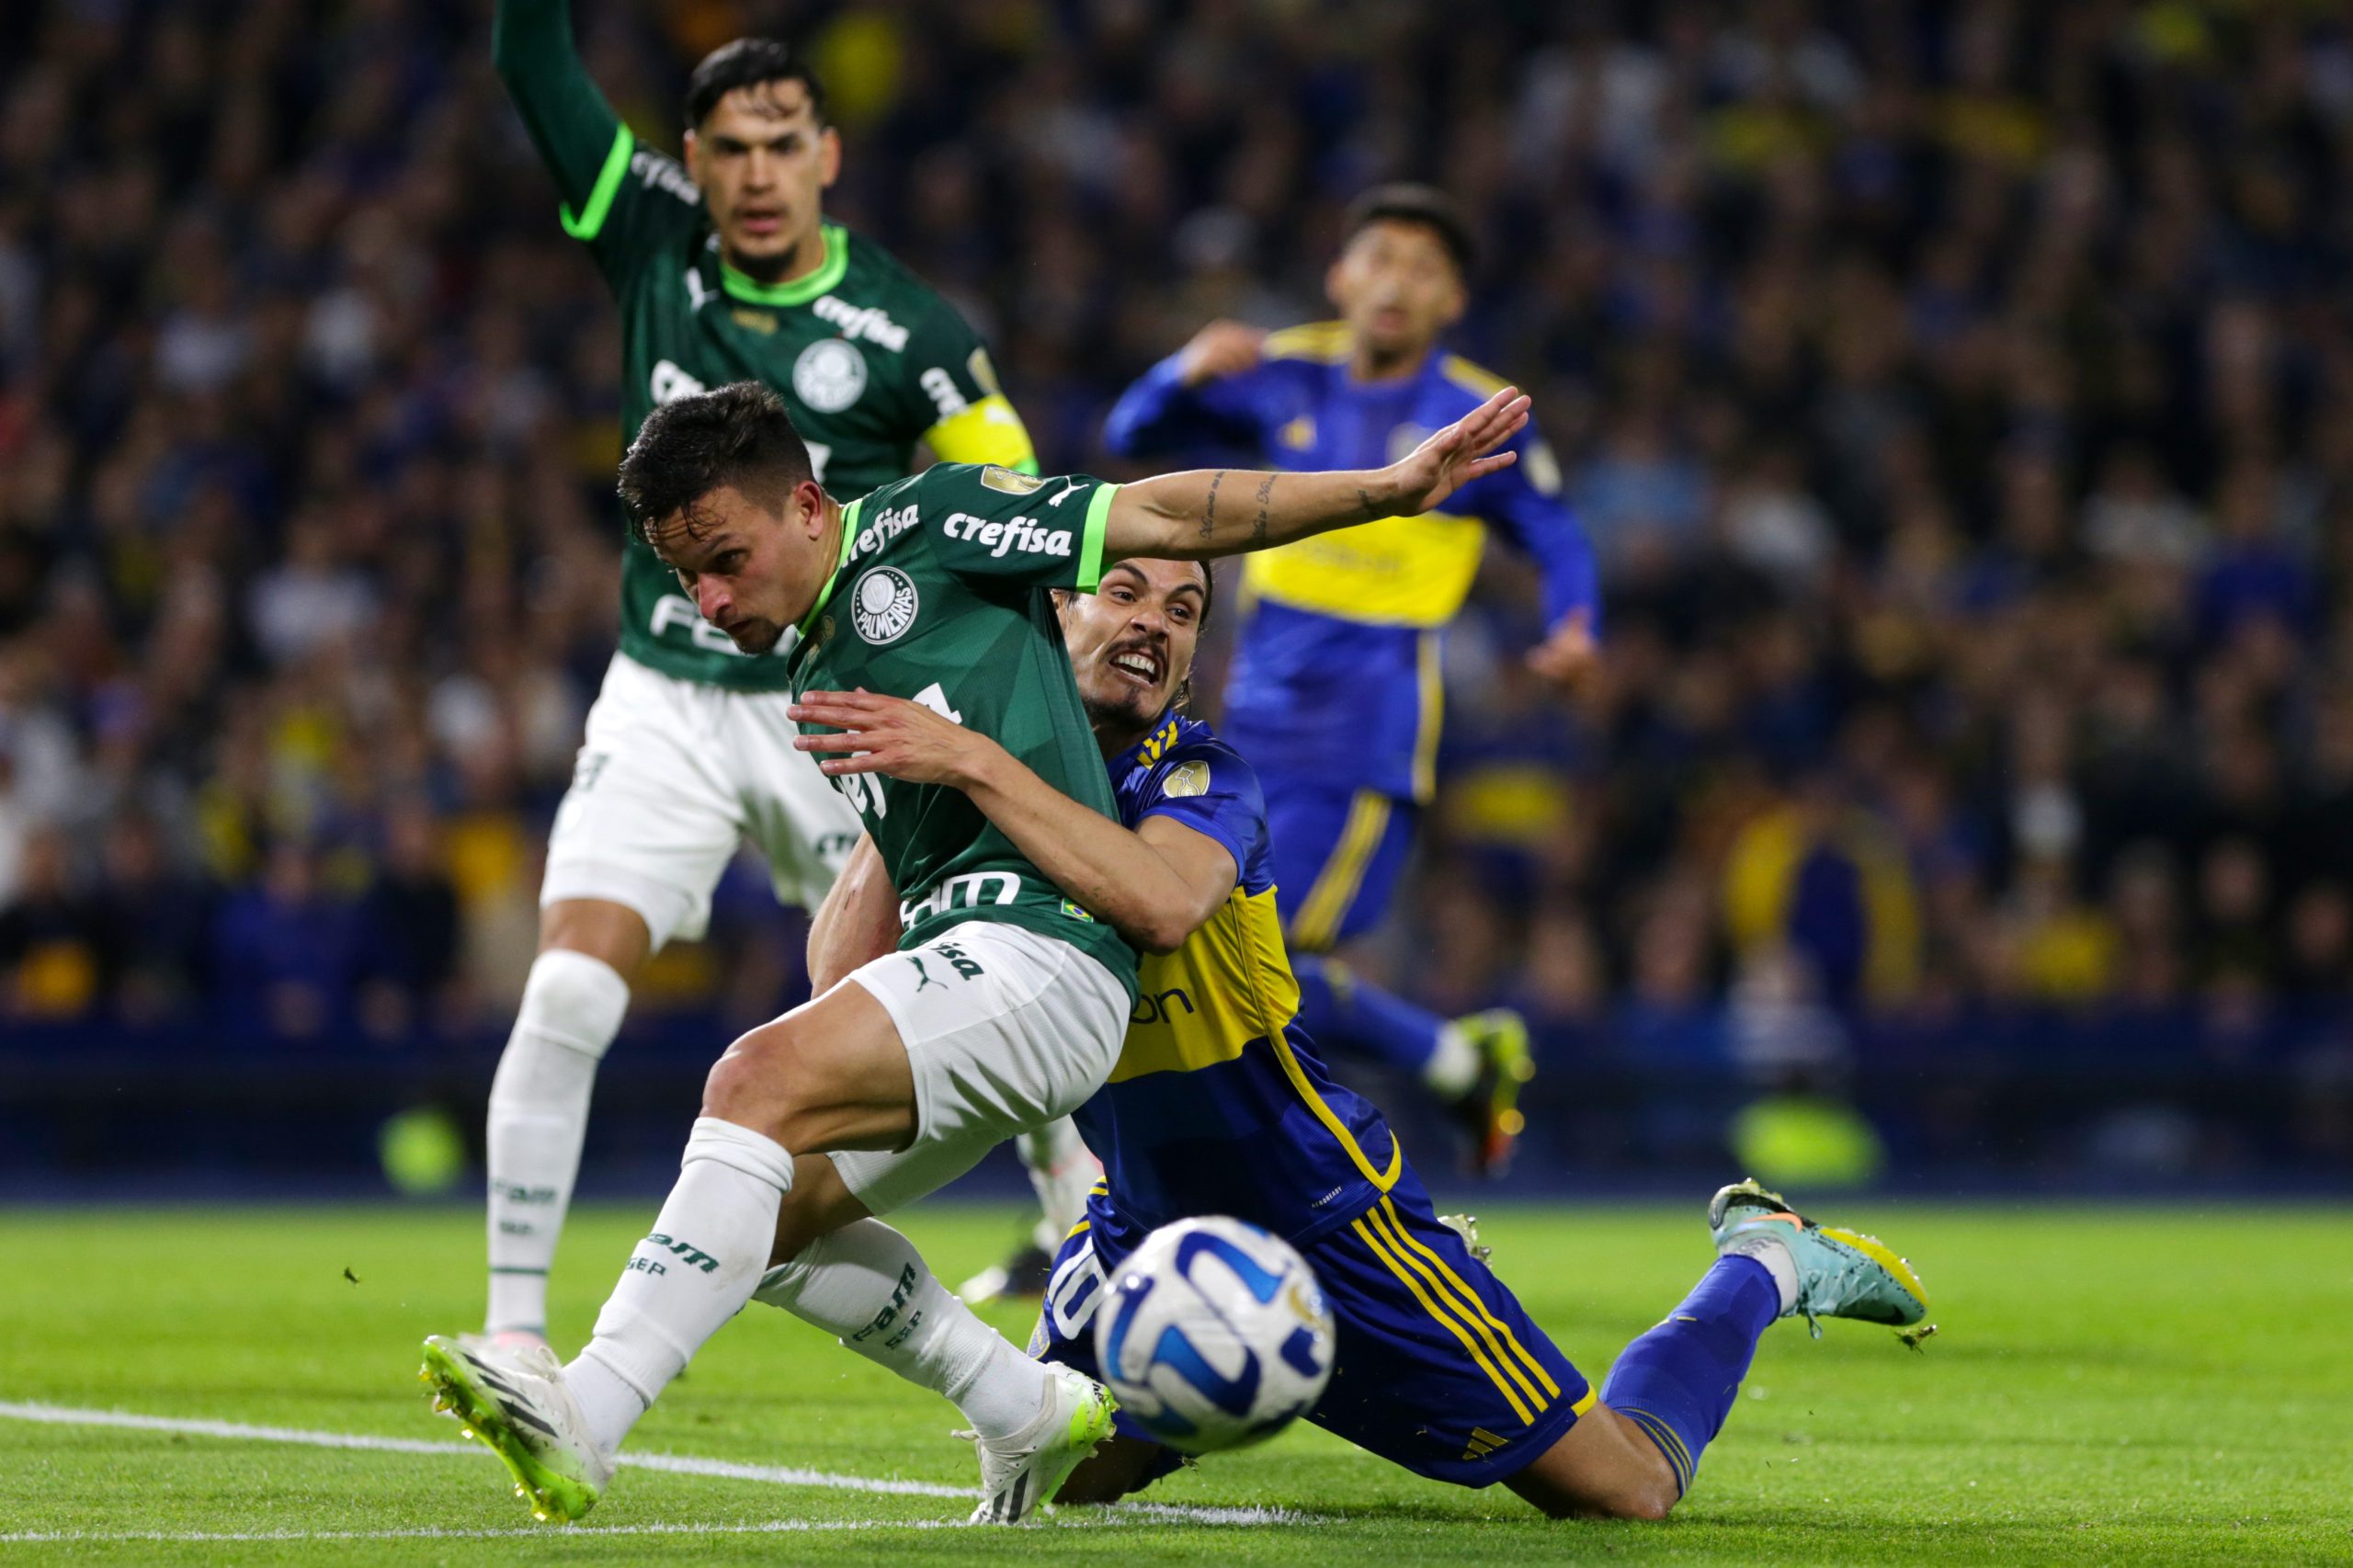 VÍDEO: Melhores momentos de Boca Juniors 0 x 0 Palmeiras (CONMEBOL Libertadores) (Photo by Daniel Jayo/Getty Images)